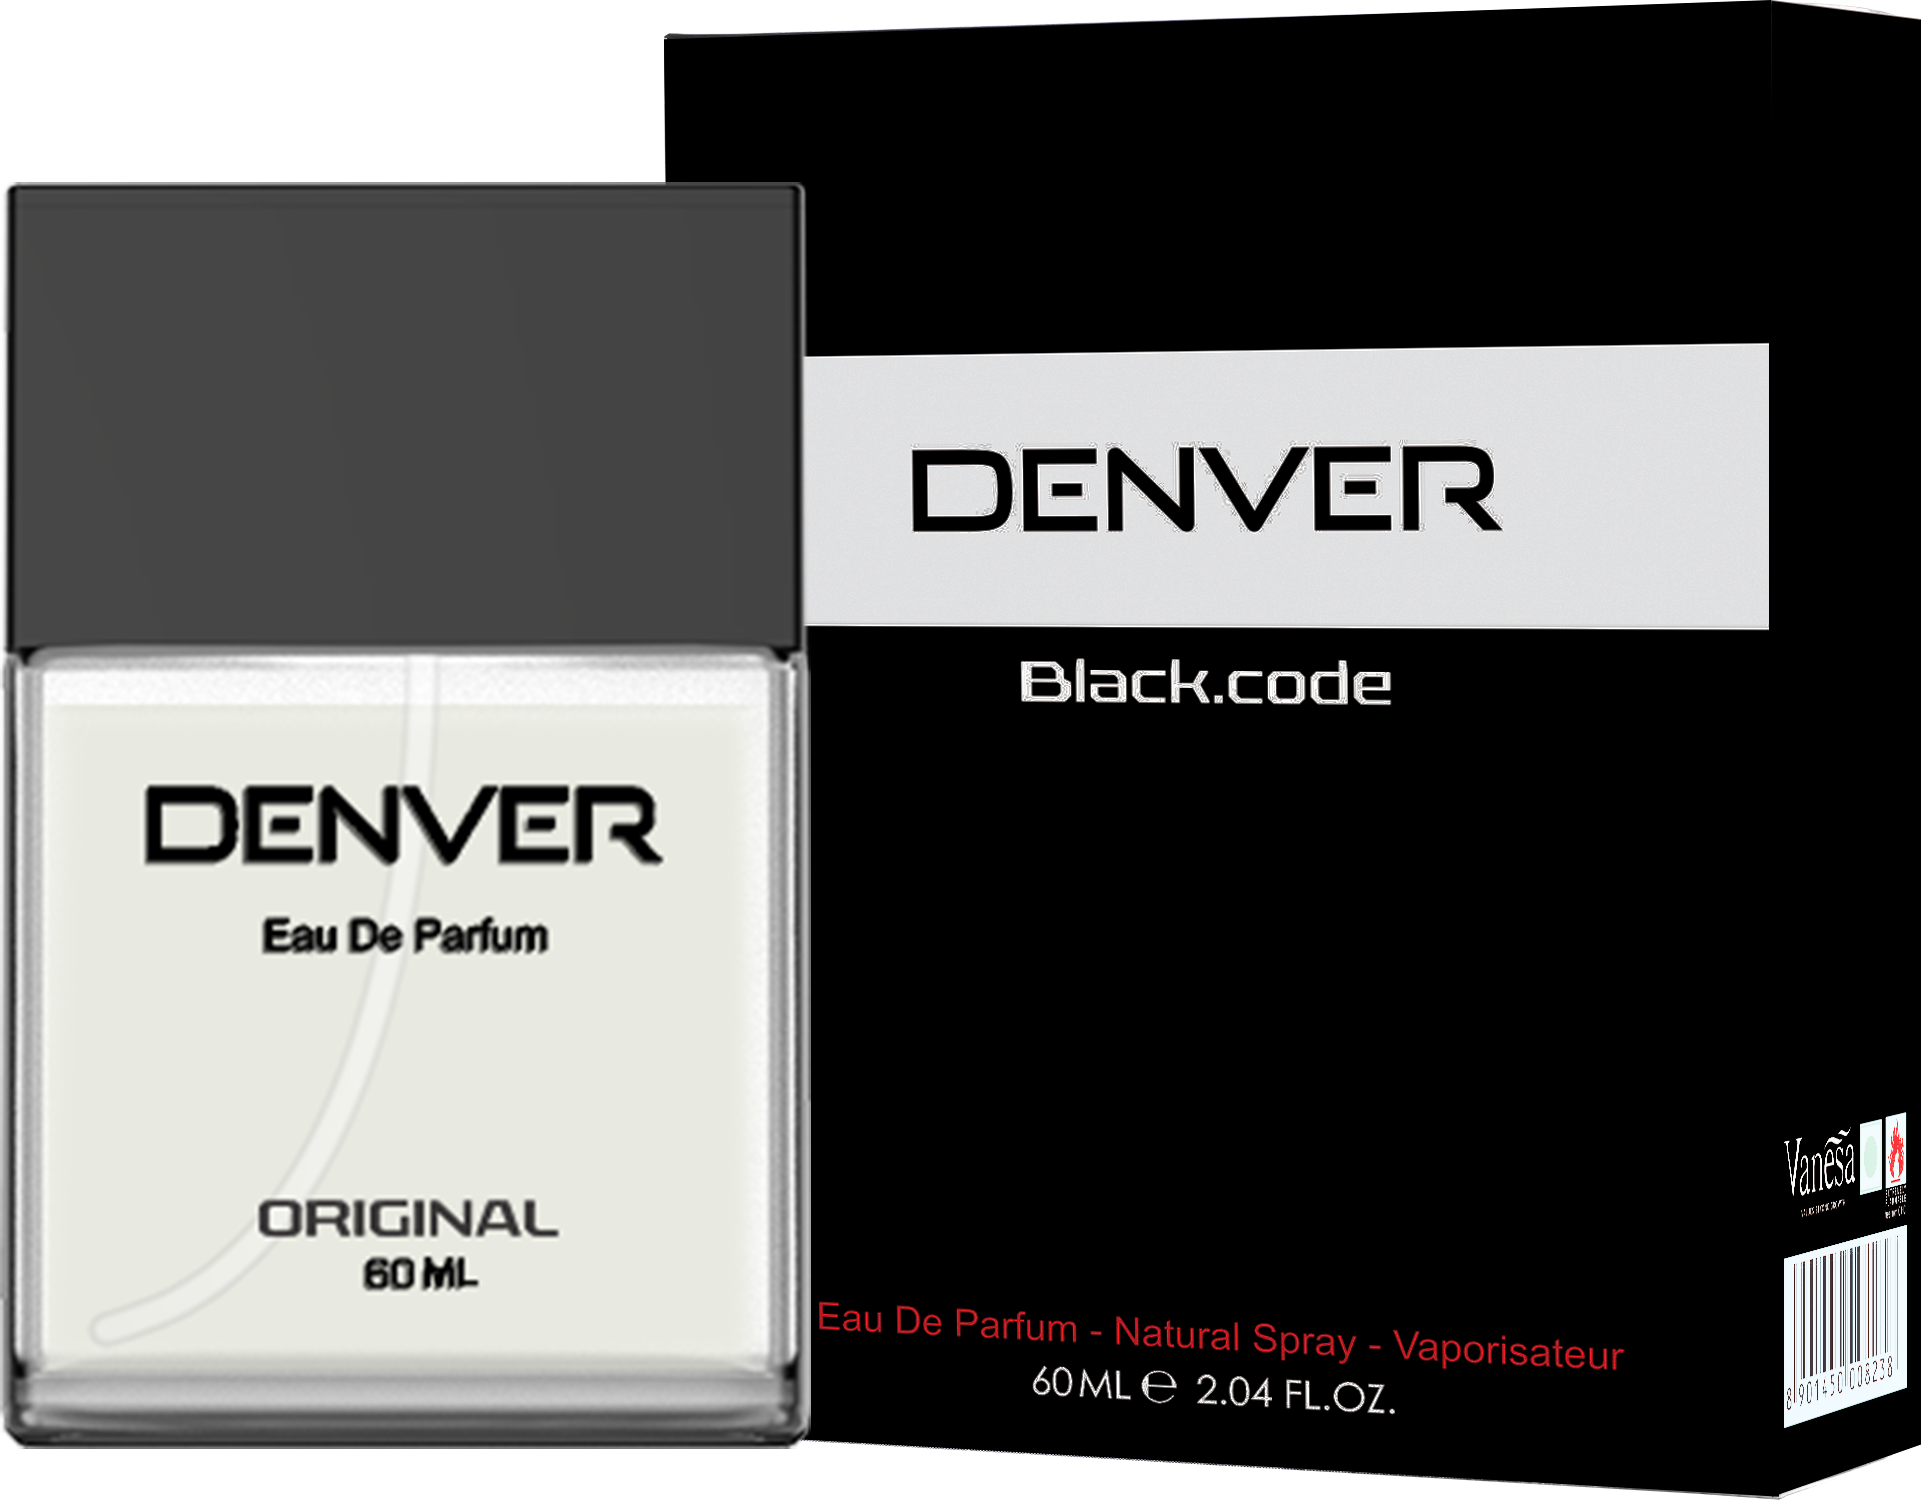     			Denver Black Code Eau De Parfum 60Ml